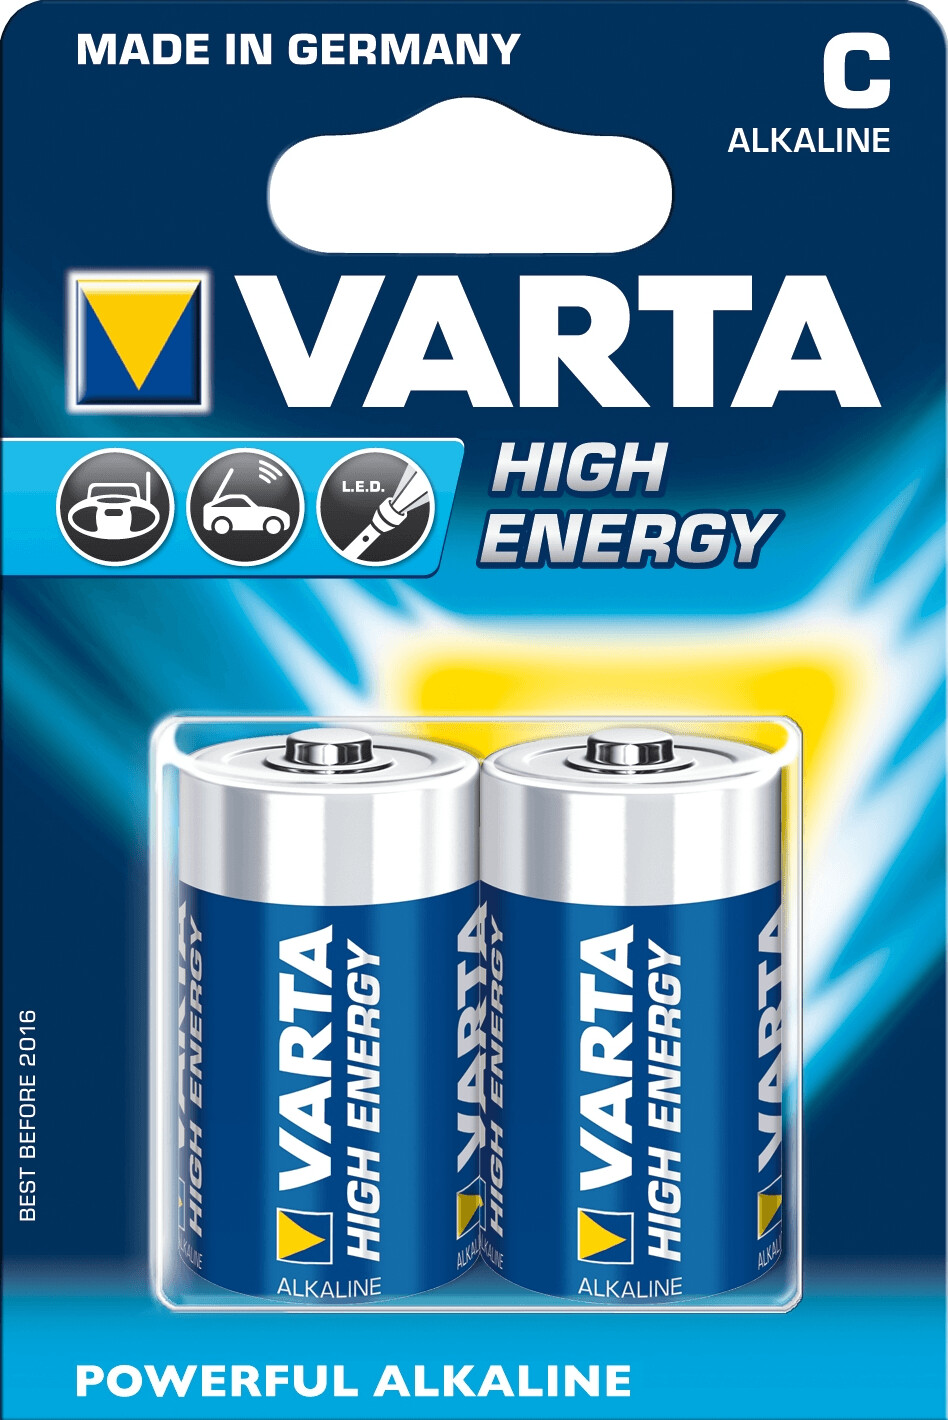 Pilas alcalinas Varta C LR14 HighEnergy - ¡Descúbrelas! - DivisionLED